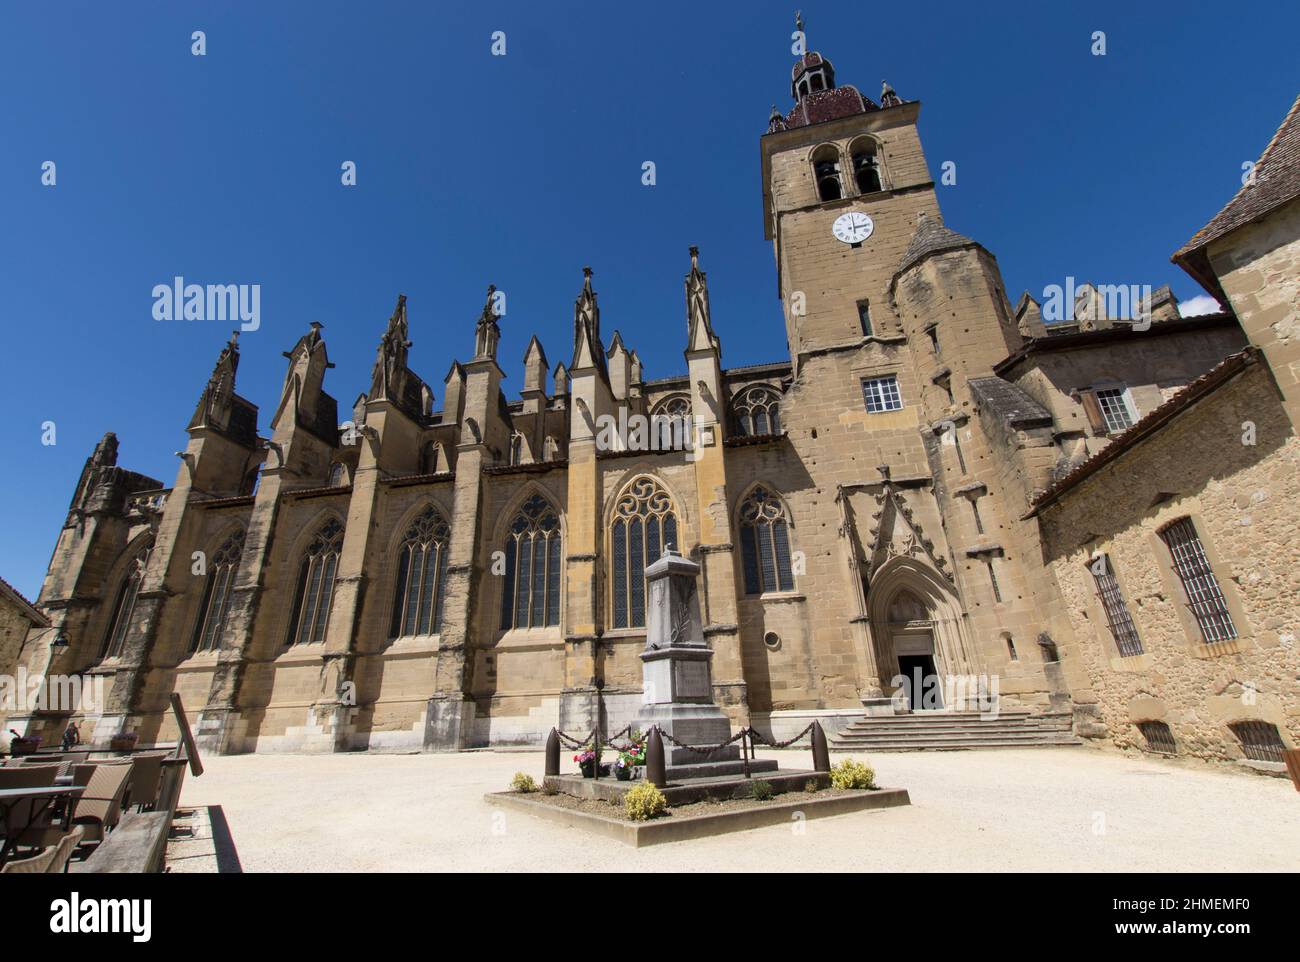 St Antoine l'abbaye, avec ses maisons anciennes à colombages, sa halle médiévale et son abbaye fondée en 1297, Isère, Frankreich Stockfoto